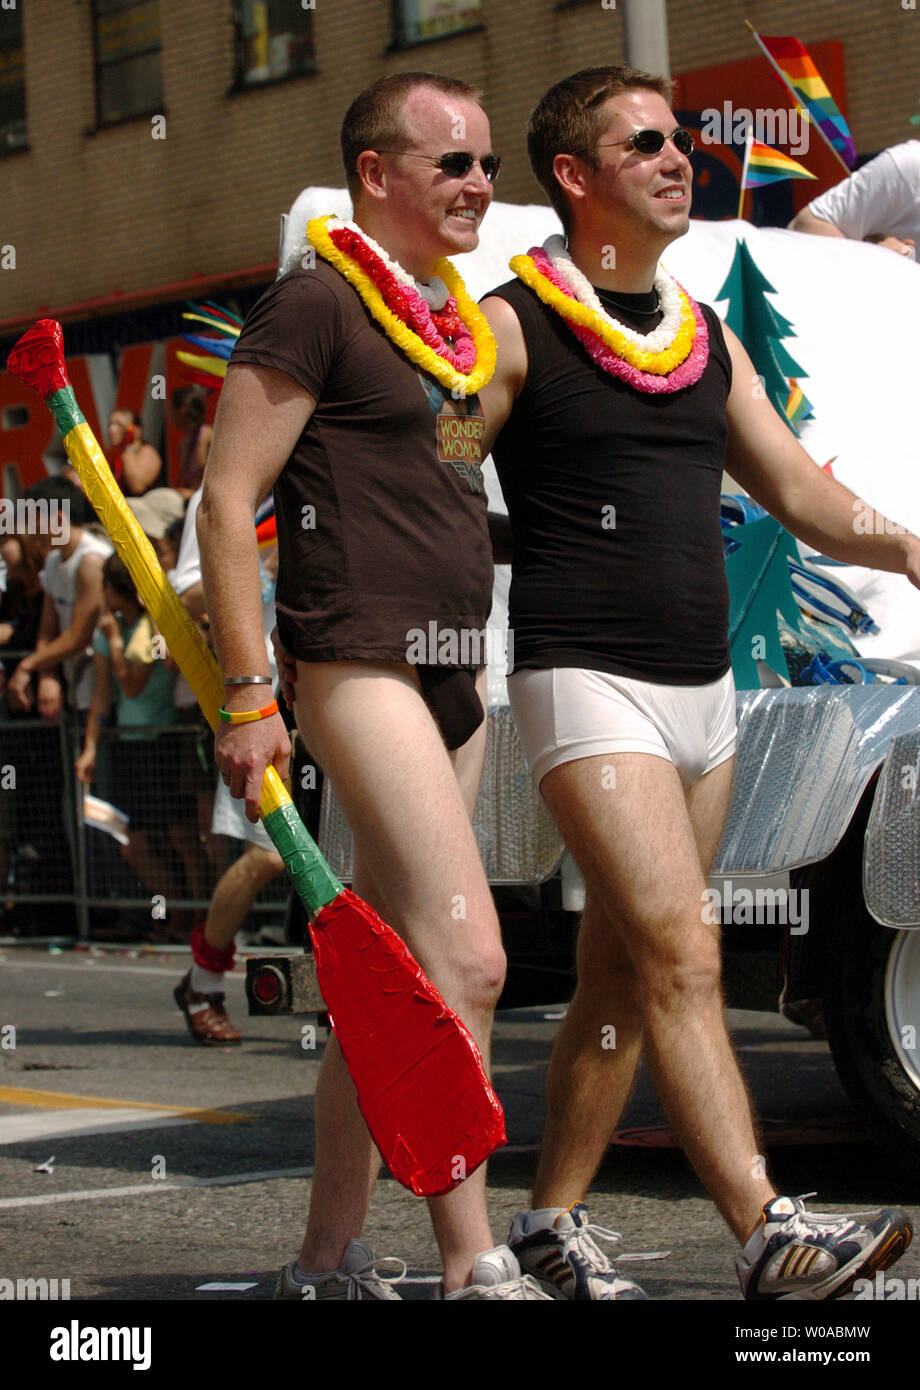 Un couple gay, d'un club de canoë en mars, rue Yonge pendant la Parade de la fierté en couleurs 26 juin 2005 au centre-ville de Toronto, Canada. Pride Toronto célèbre son 25e année a attiré environ 20 000 marcheurs et un million de fêtards environ 80 millions de dollars dans l'économie locale Toronto au cours de la semaine. (Photo d'UPI/Christine Chew) Banque D'Images